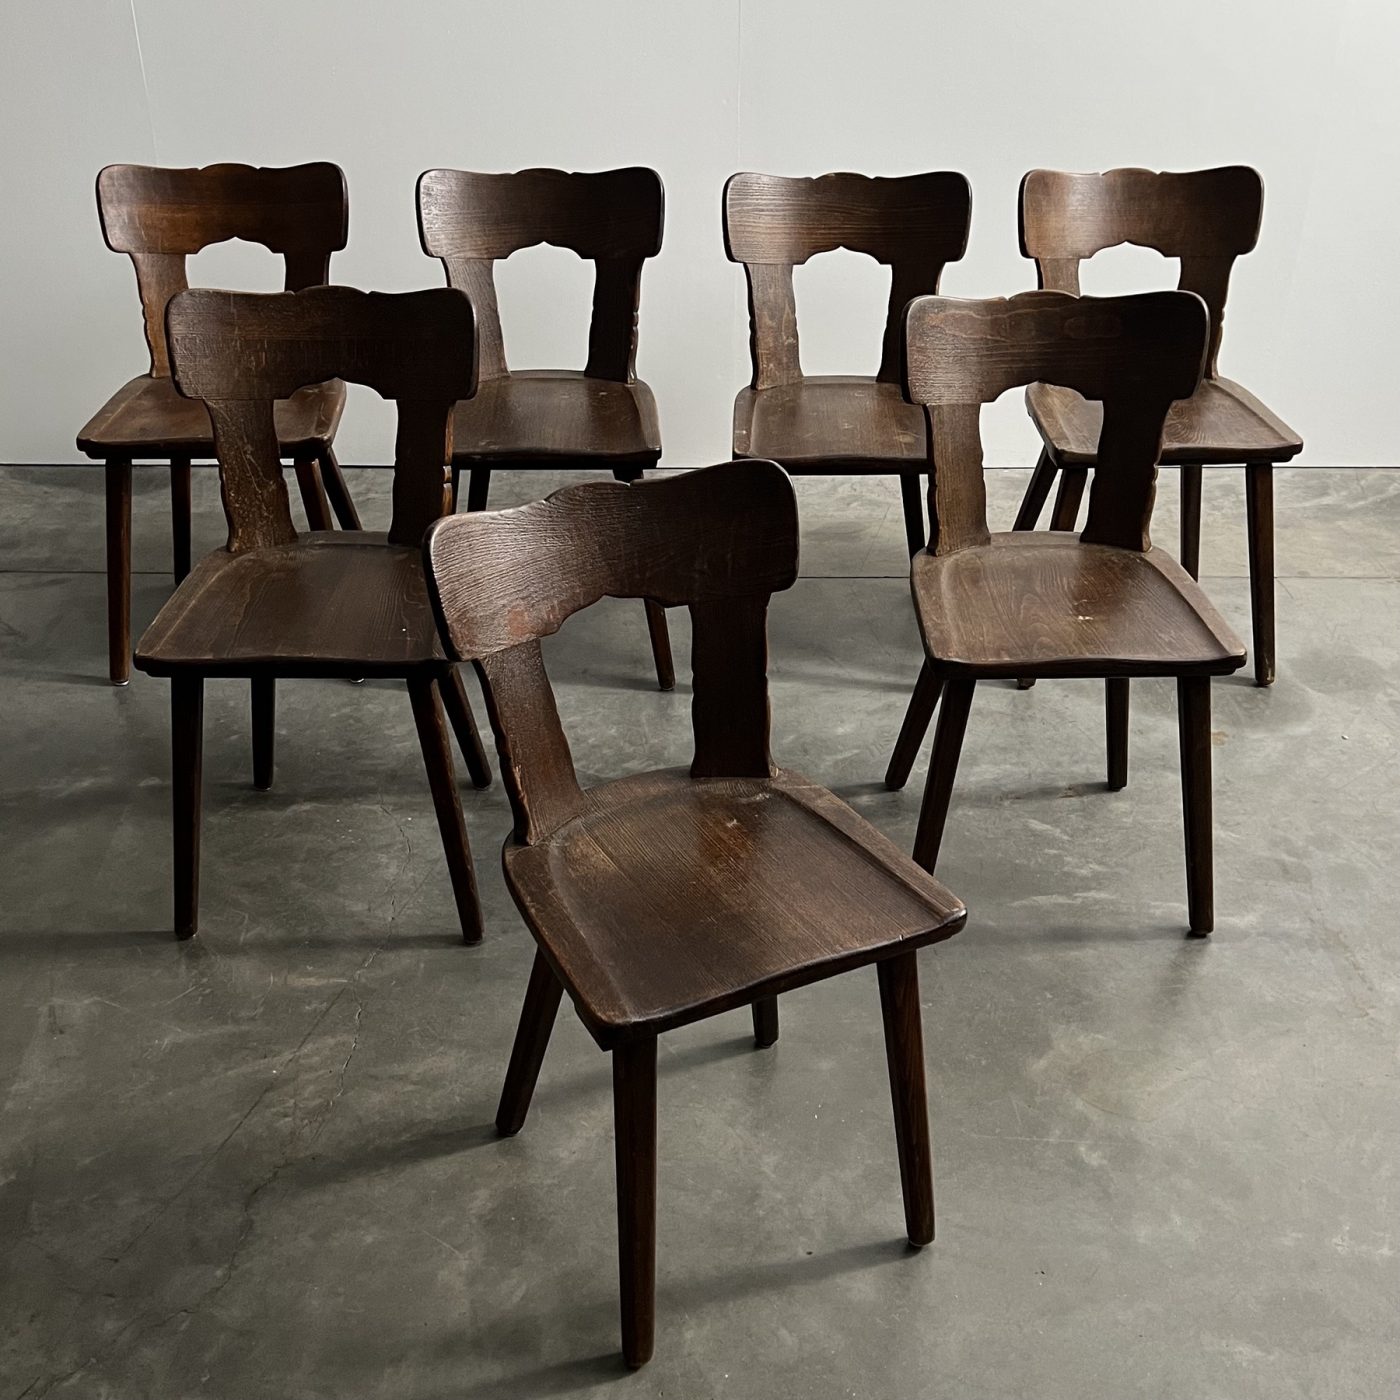 objet-vagabond-bistrot-chairs0000